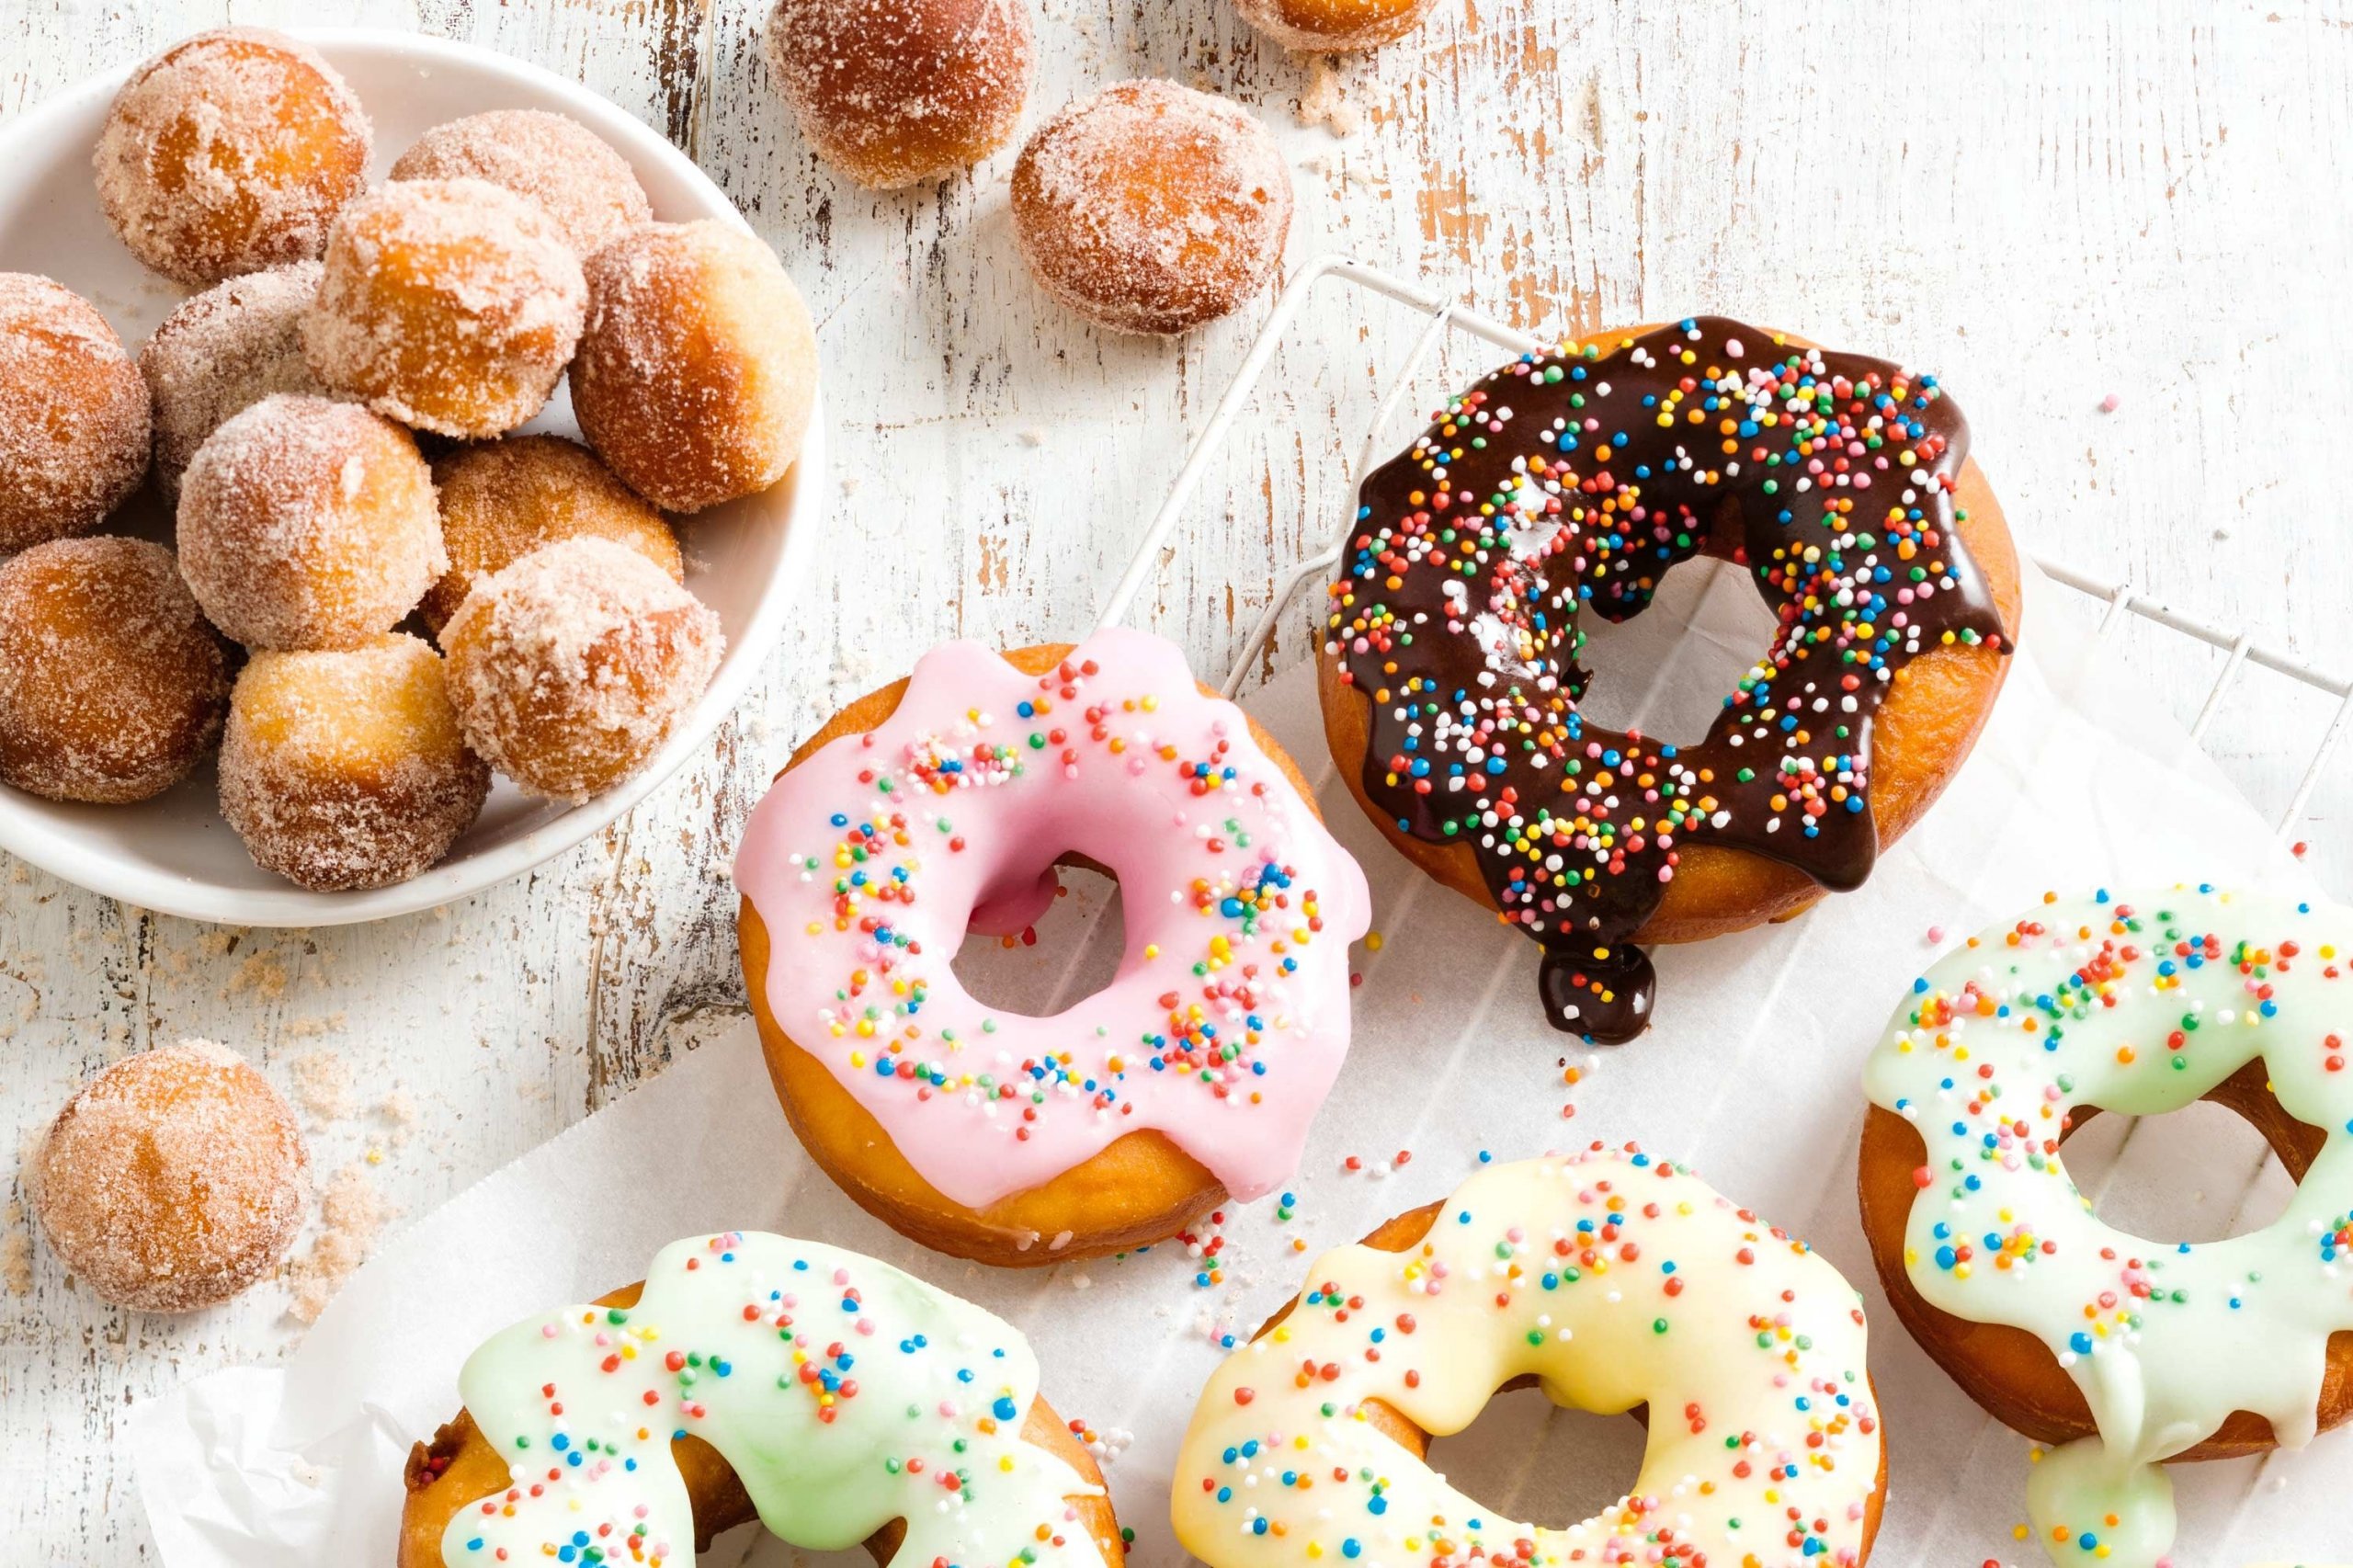 iced-doughnuts-and-cinnamon-doughnut-holes-104029-1.jpeg